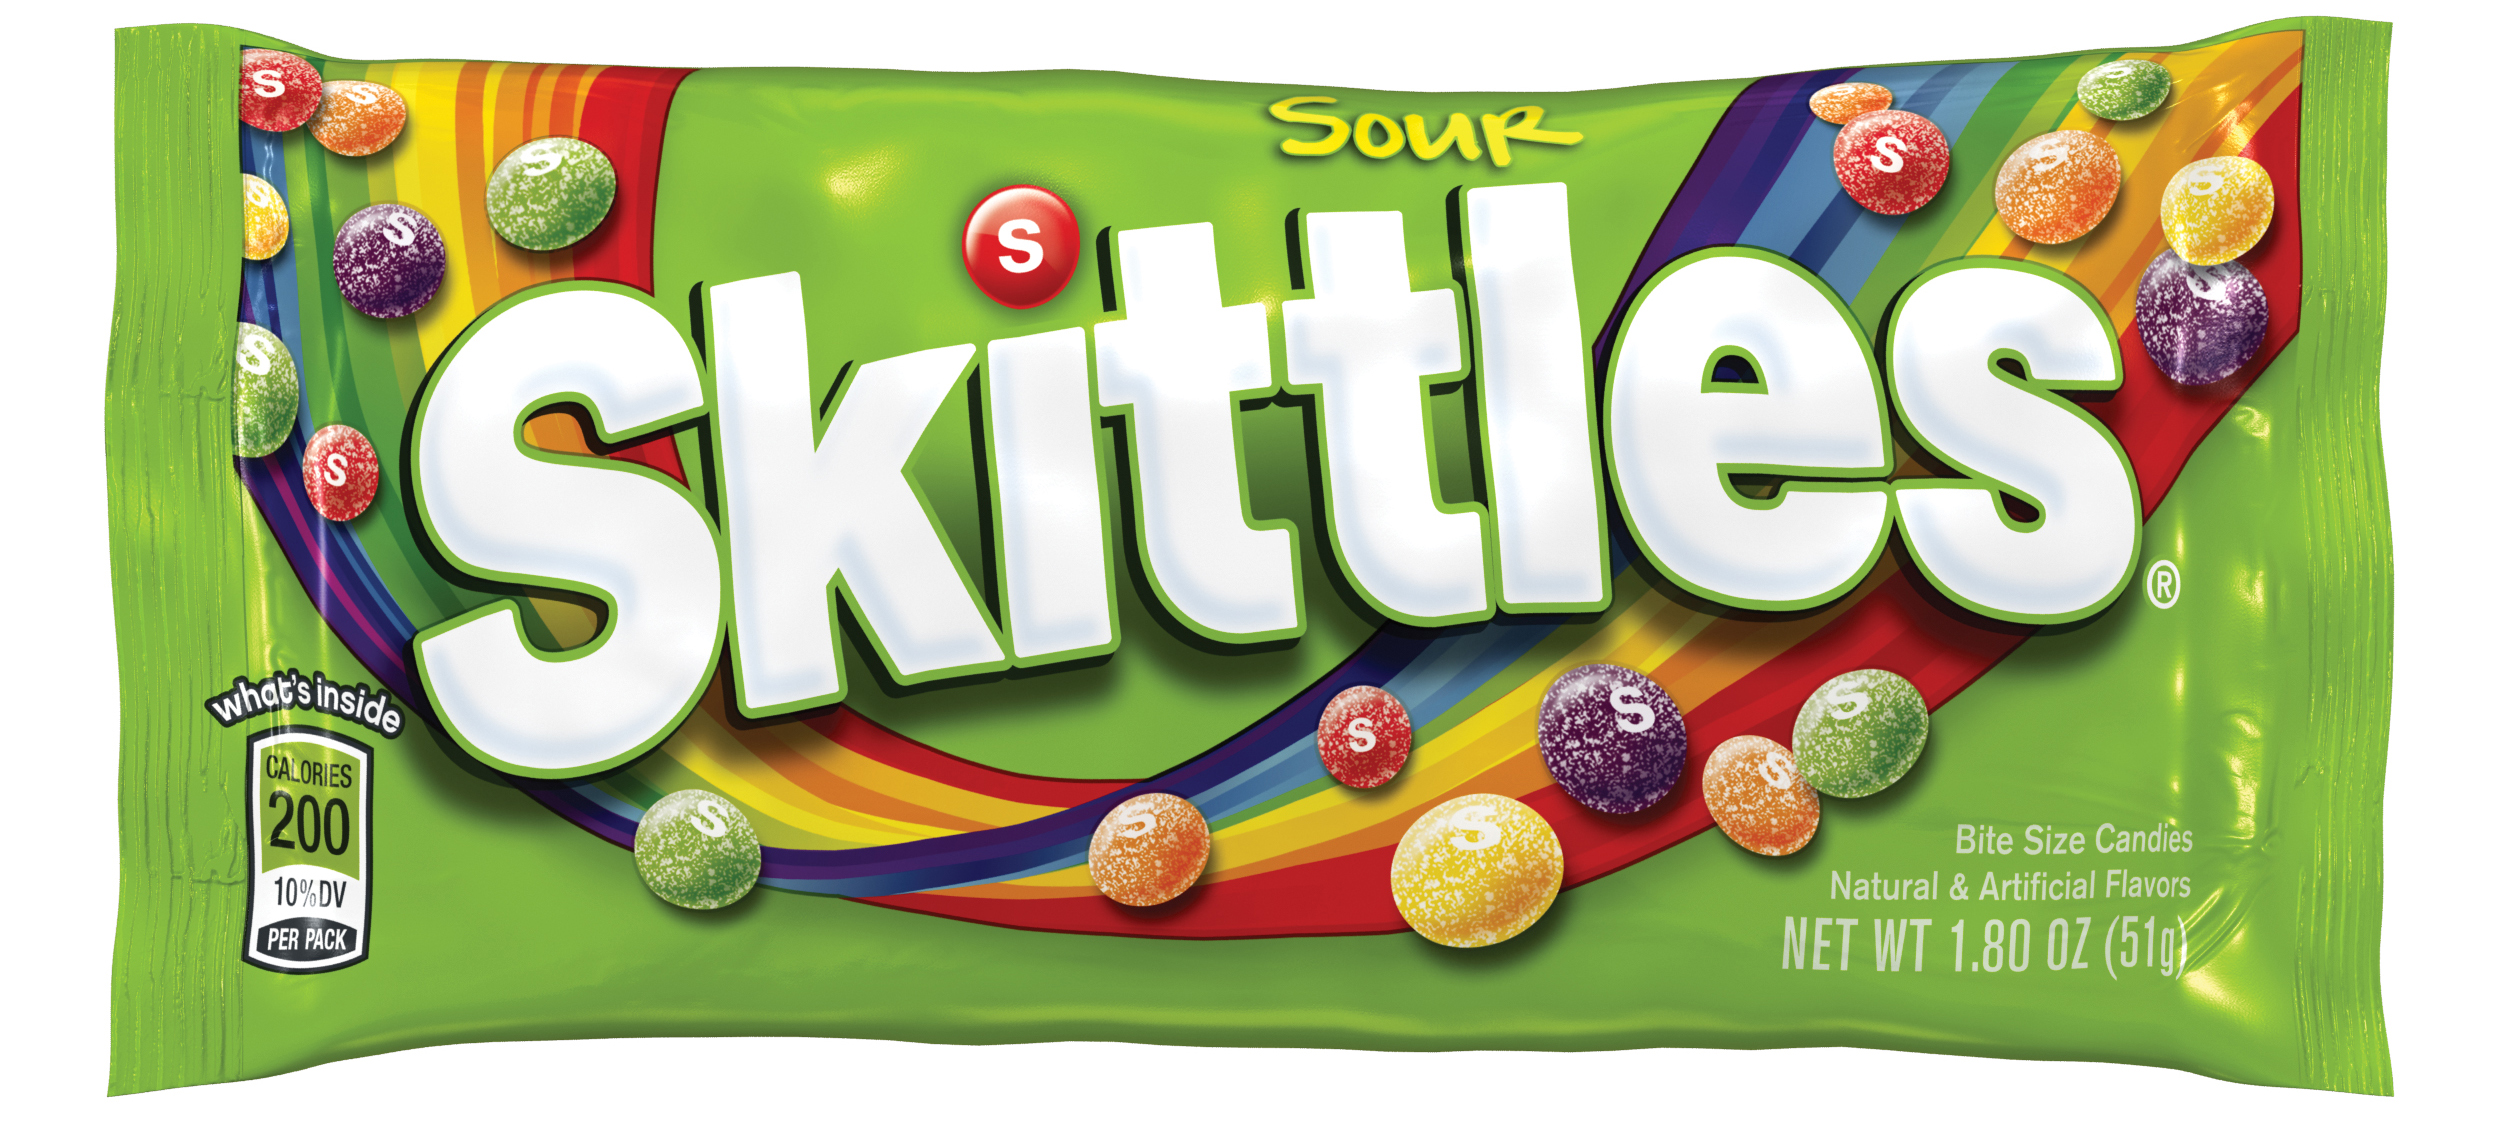 Sour Skittles